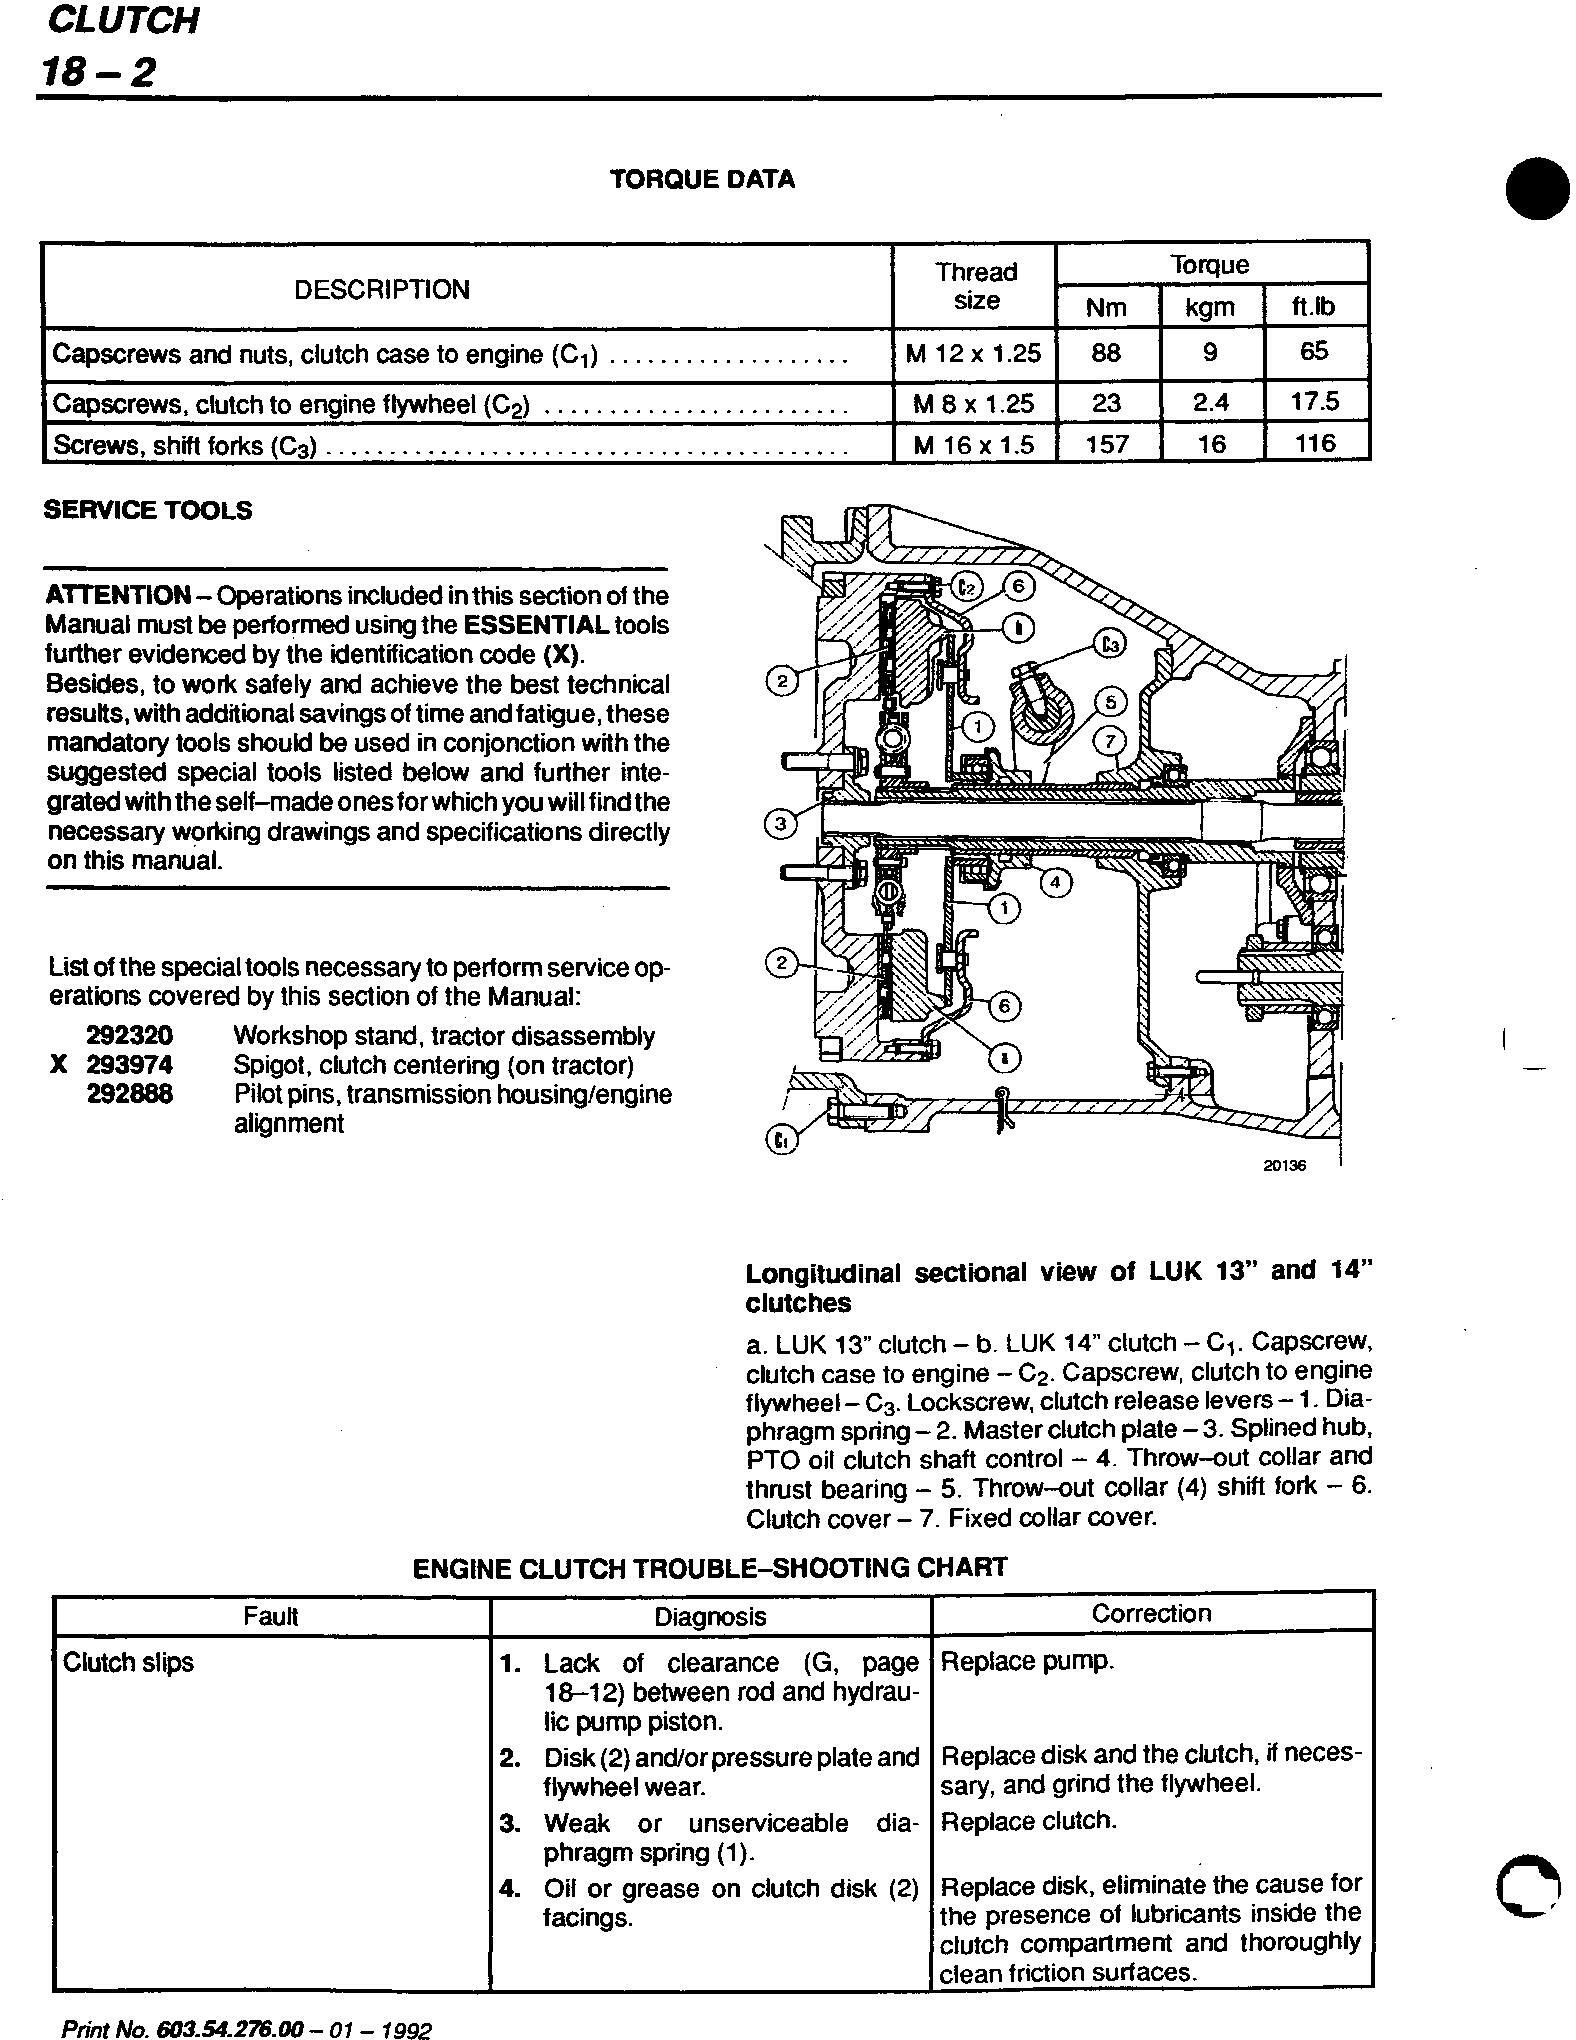 Fiat F100, F110, F120, F130 Winner F Series Tractor Service Manual (6035427600) - 1